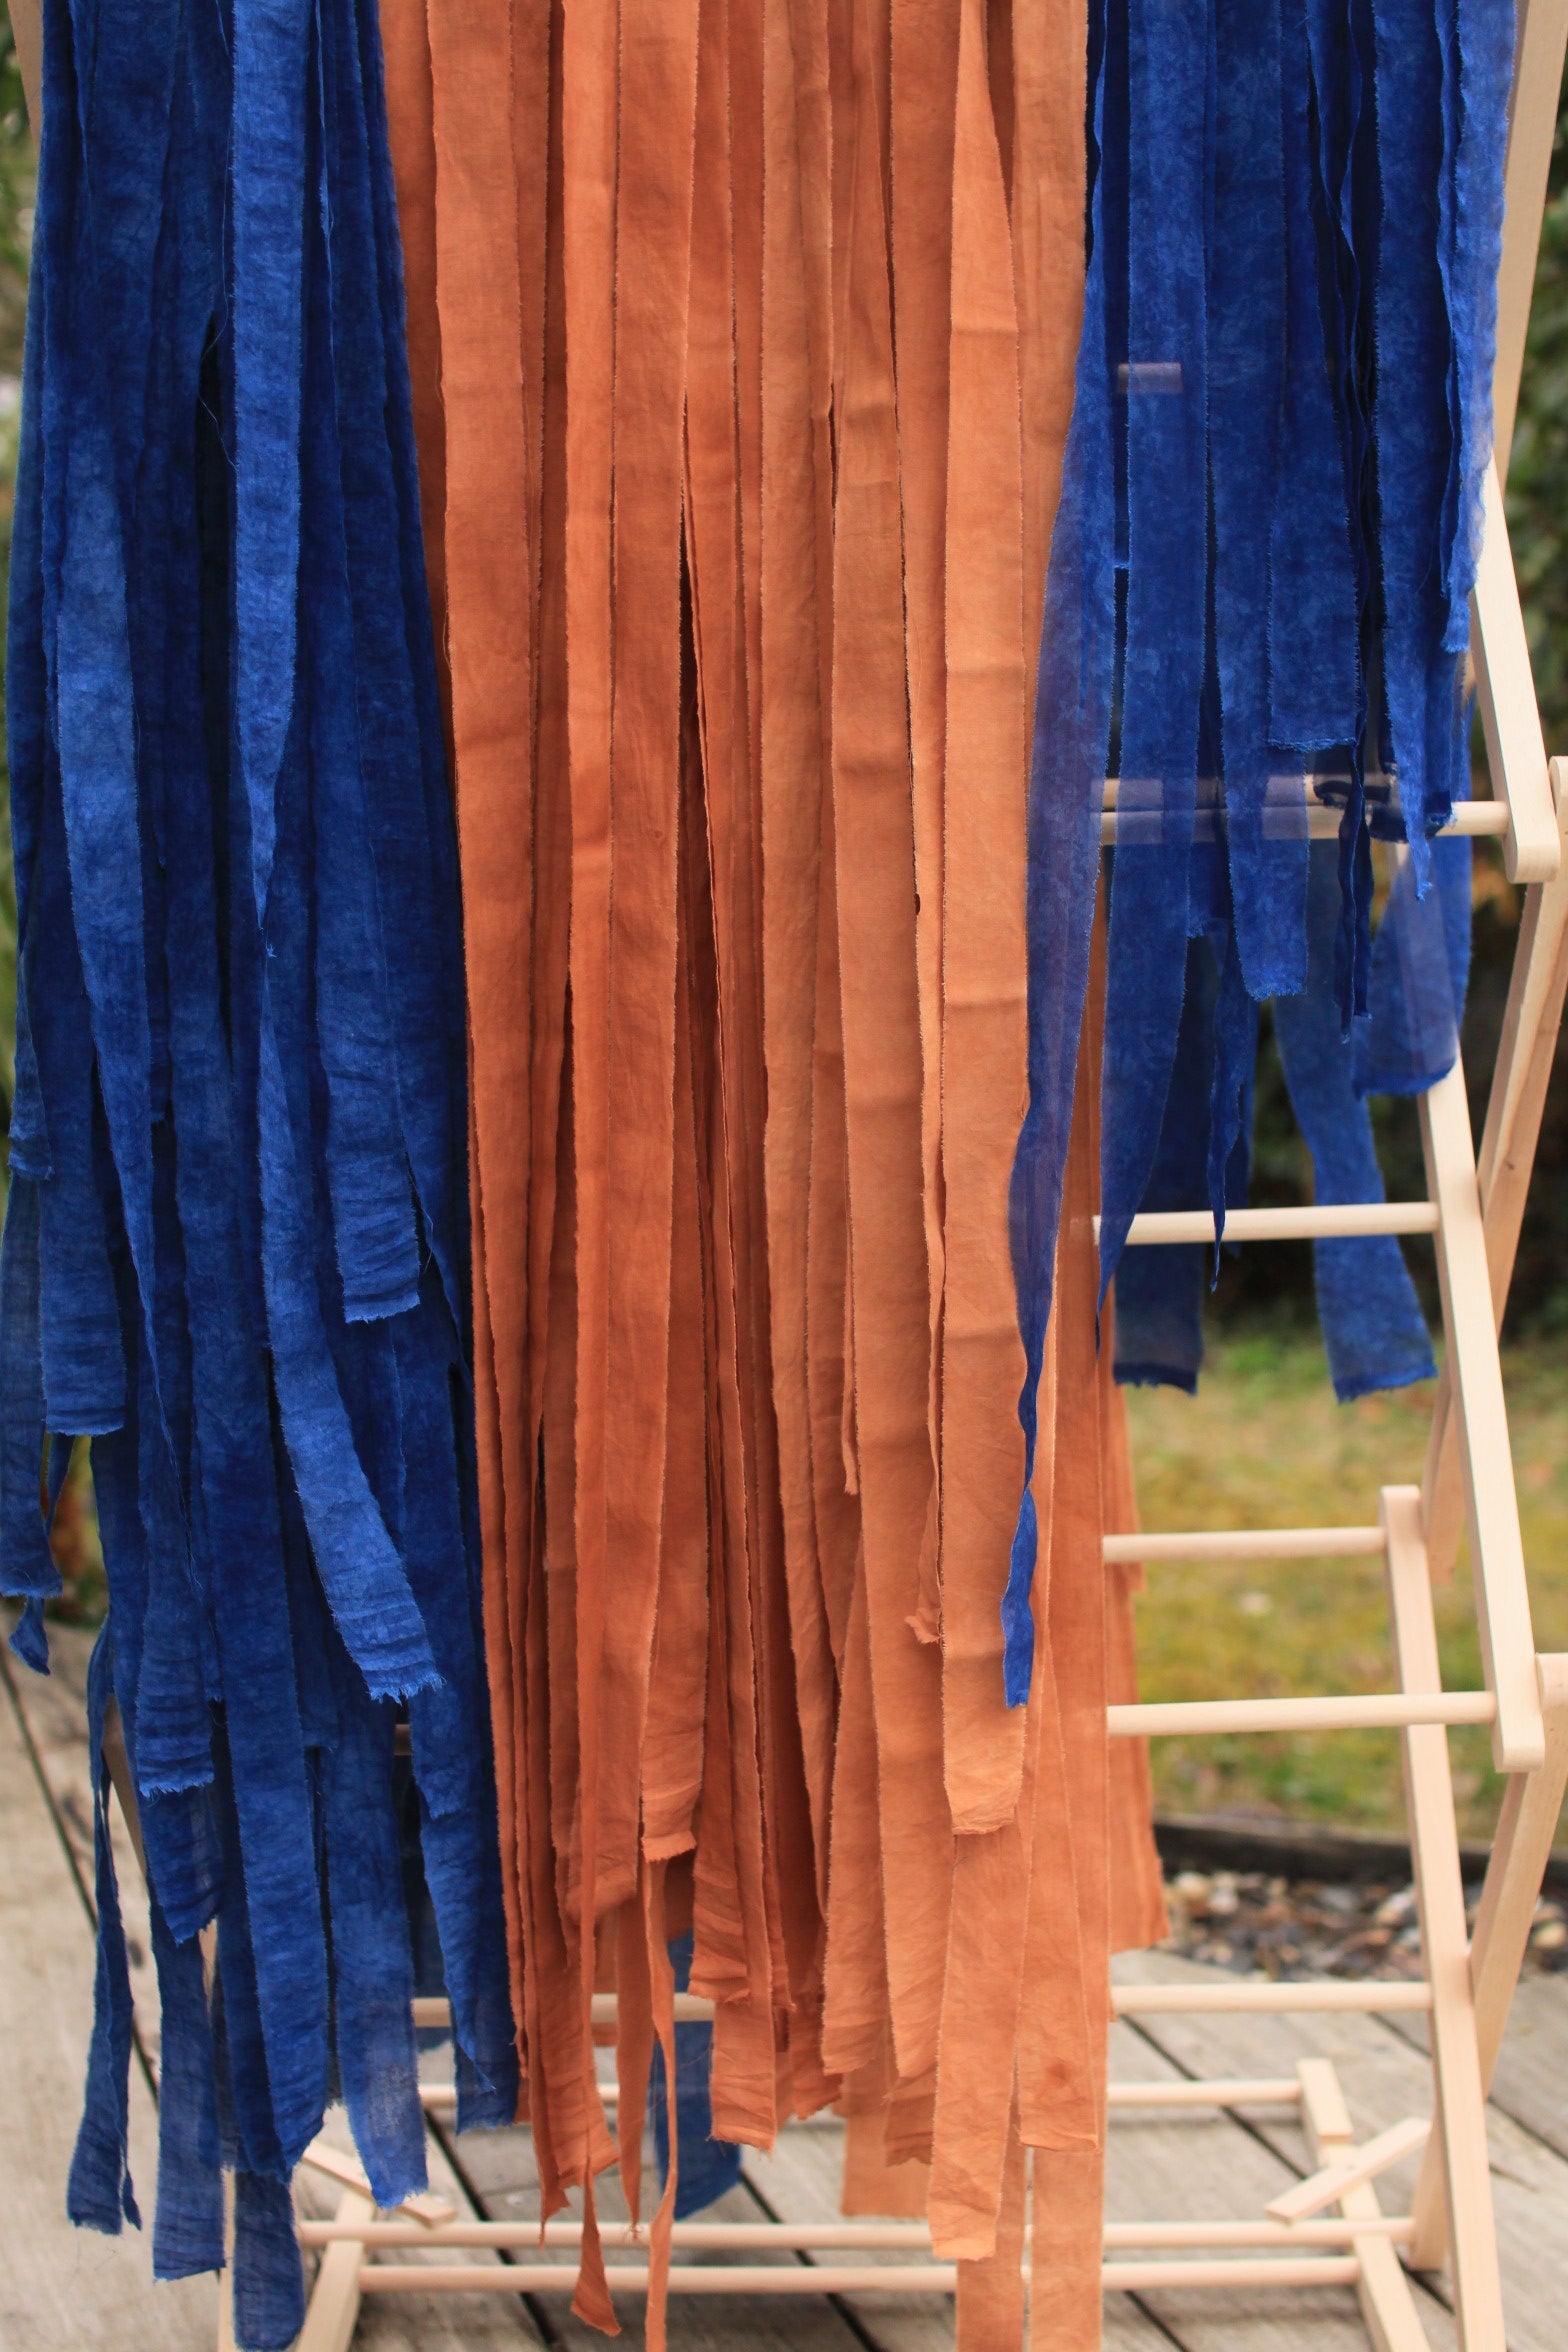 Ruban en popeline de coton - couleur "terra cotta" - largeur 5cm, longueur 2,5m